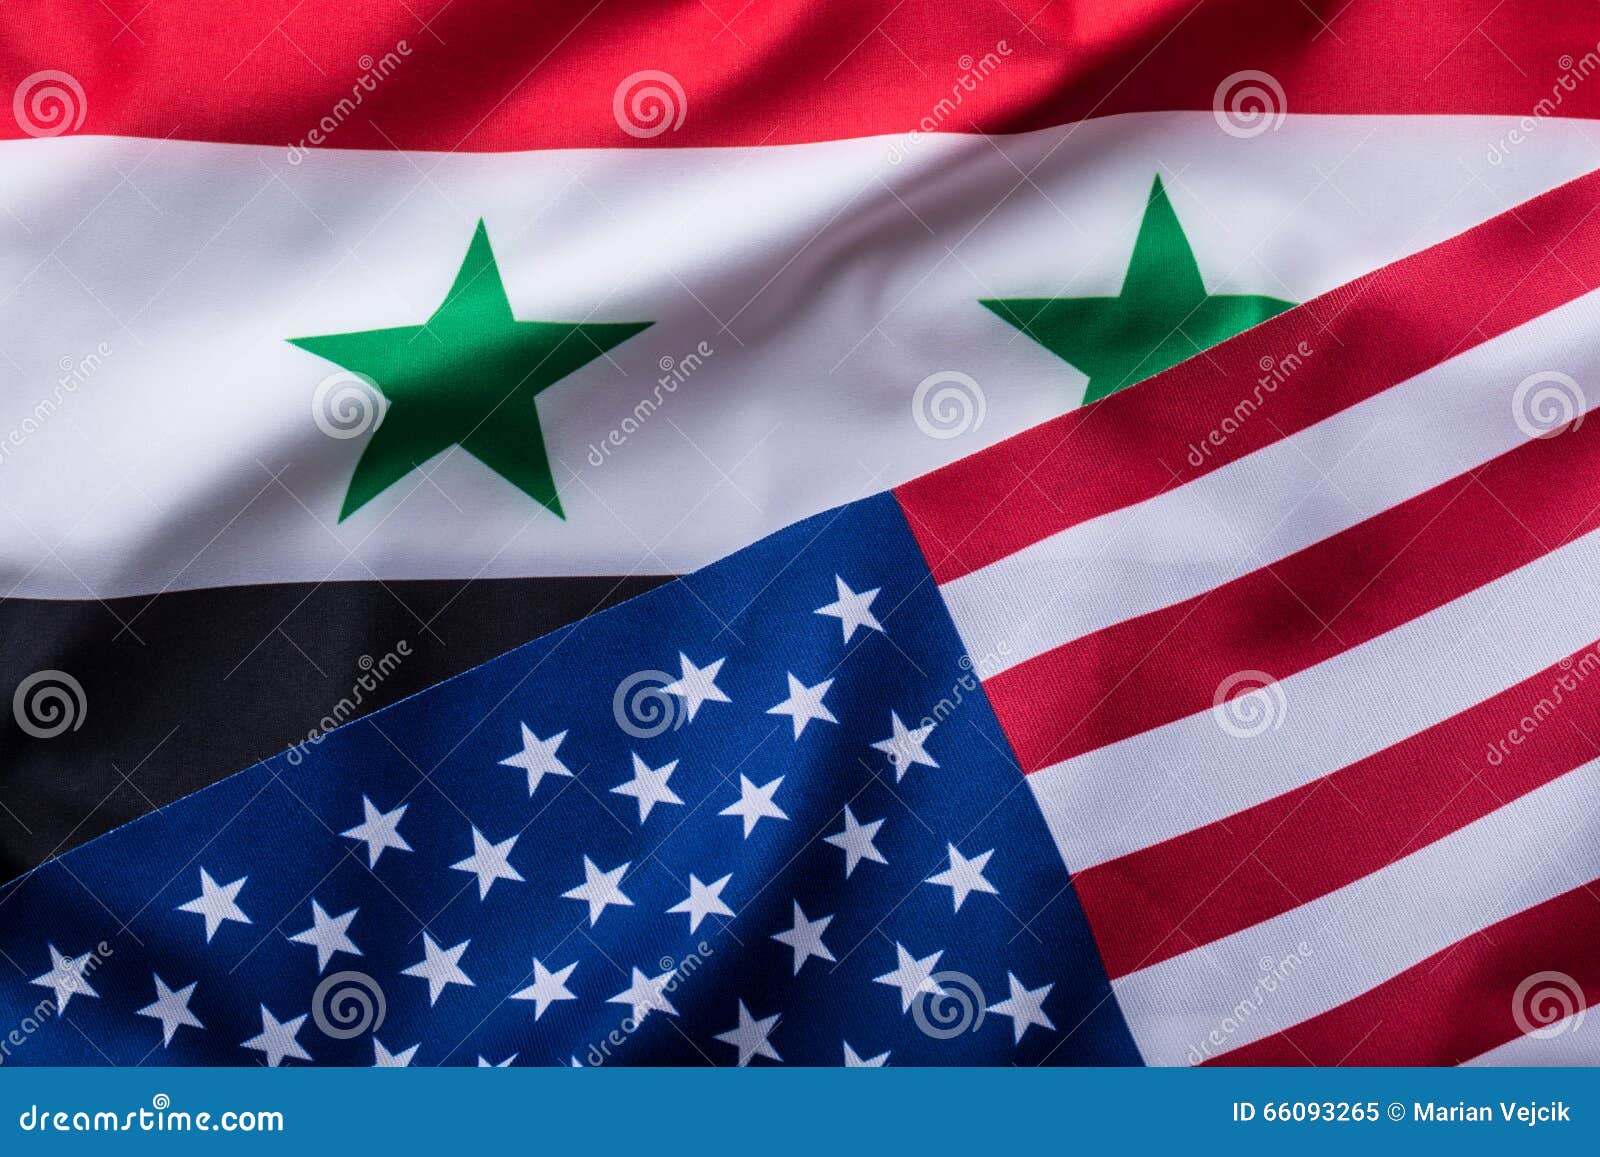 usa and syria. usa flag and syria flag